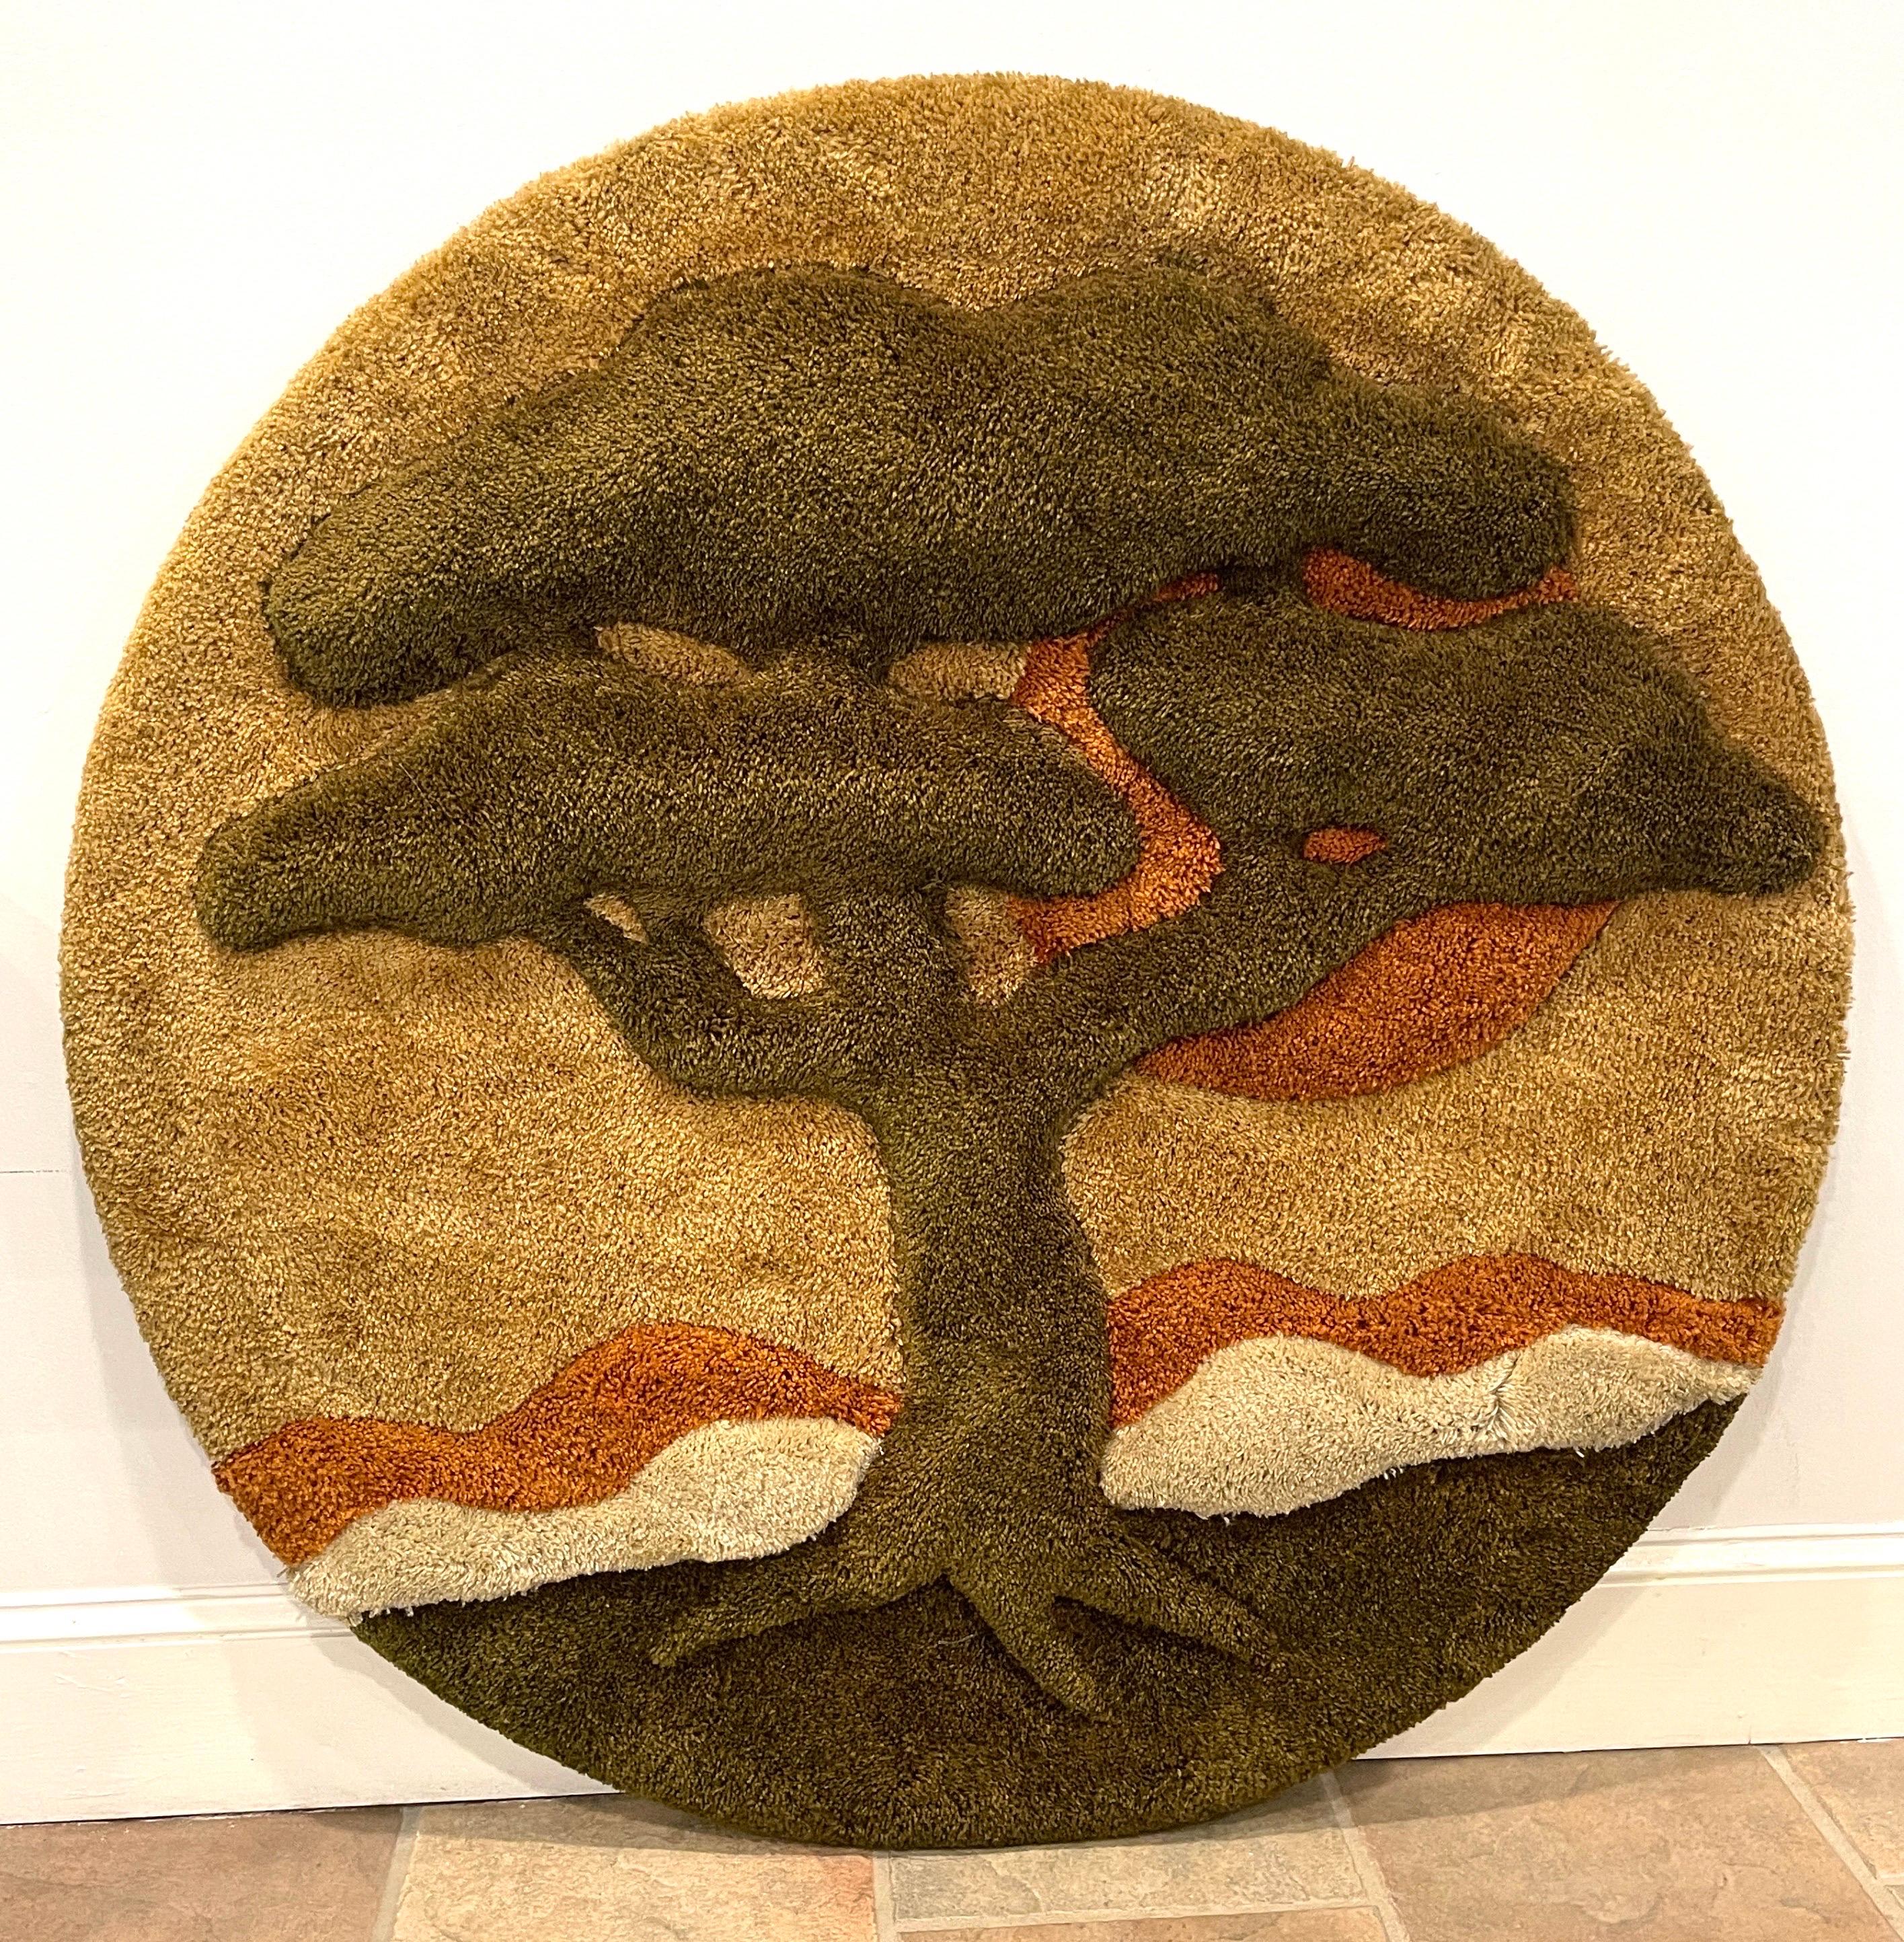 Baum des Lebens 1970's Faser Kunst Wand Skulptur 
USA, ca. 1970er Jahre

Ein großformatiges, nahezu neuwertiges Beispiel einer ikonischen Landschaftsvignette aus den 1970er Jahren in Erdtönen, die aus einem kreisförmigen, geformten Faserflor aus